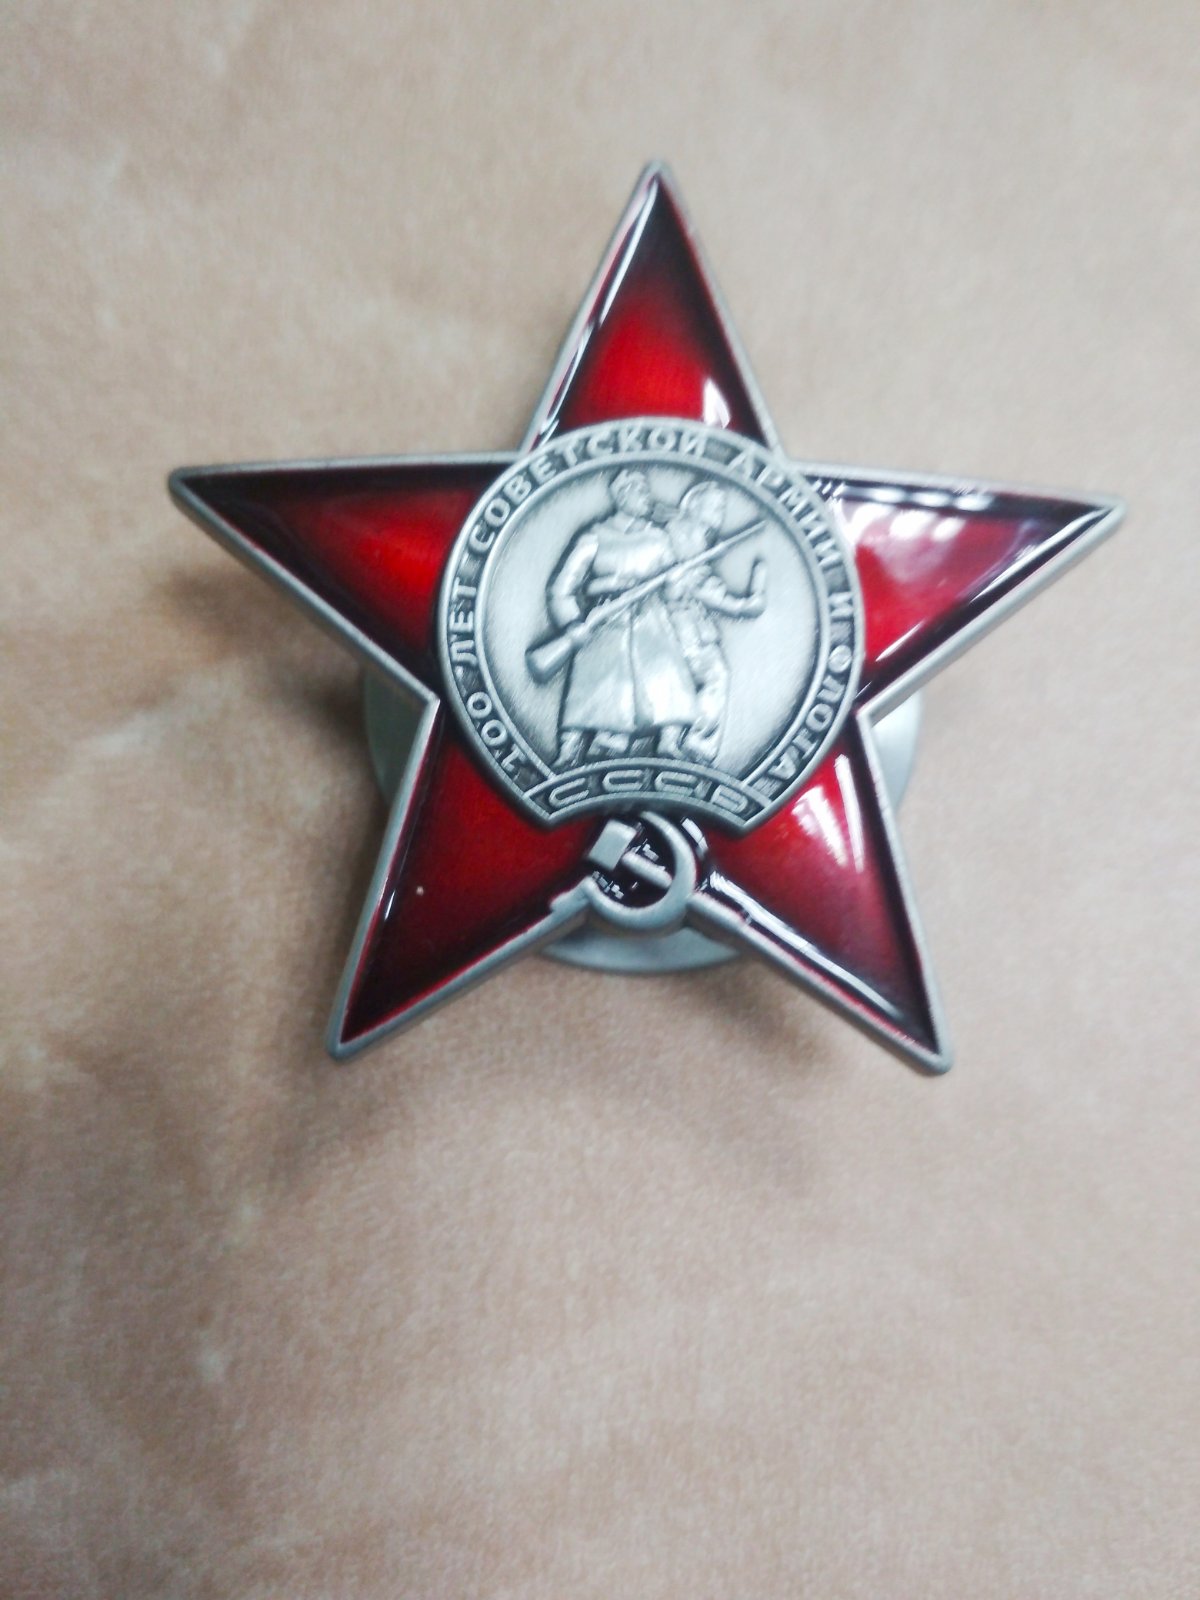 Знак "100 лет советской армии и флота". В медальоне красной звезды изображение матроса и солдата"